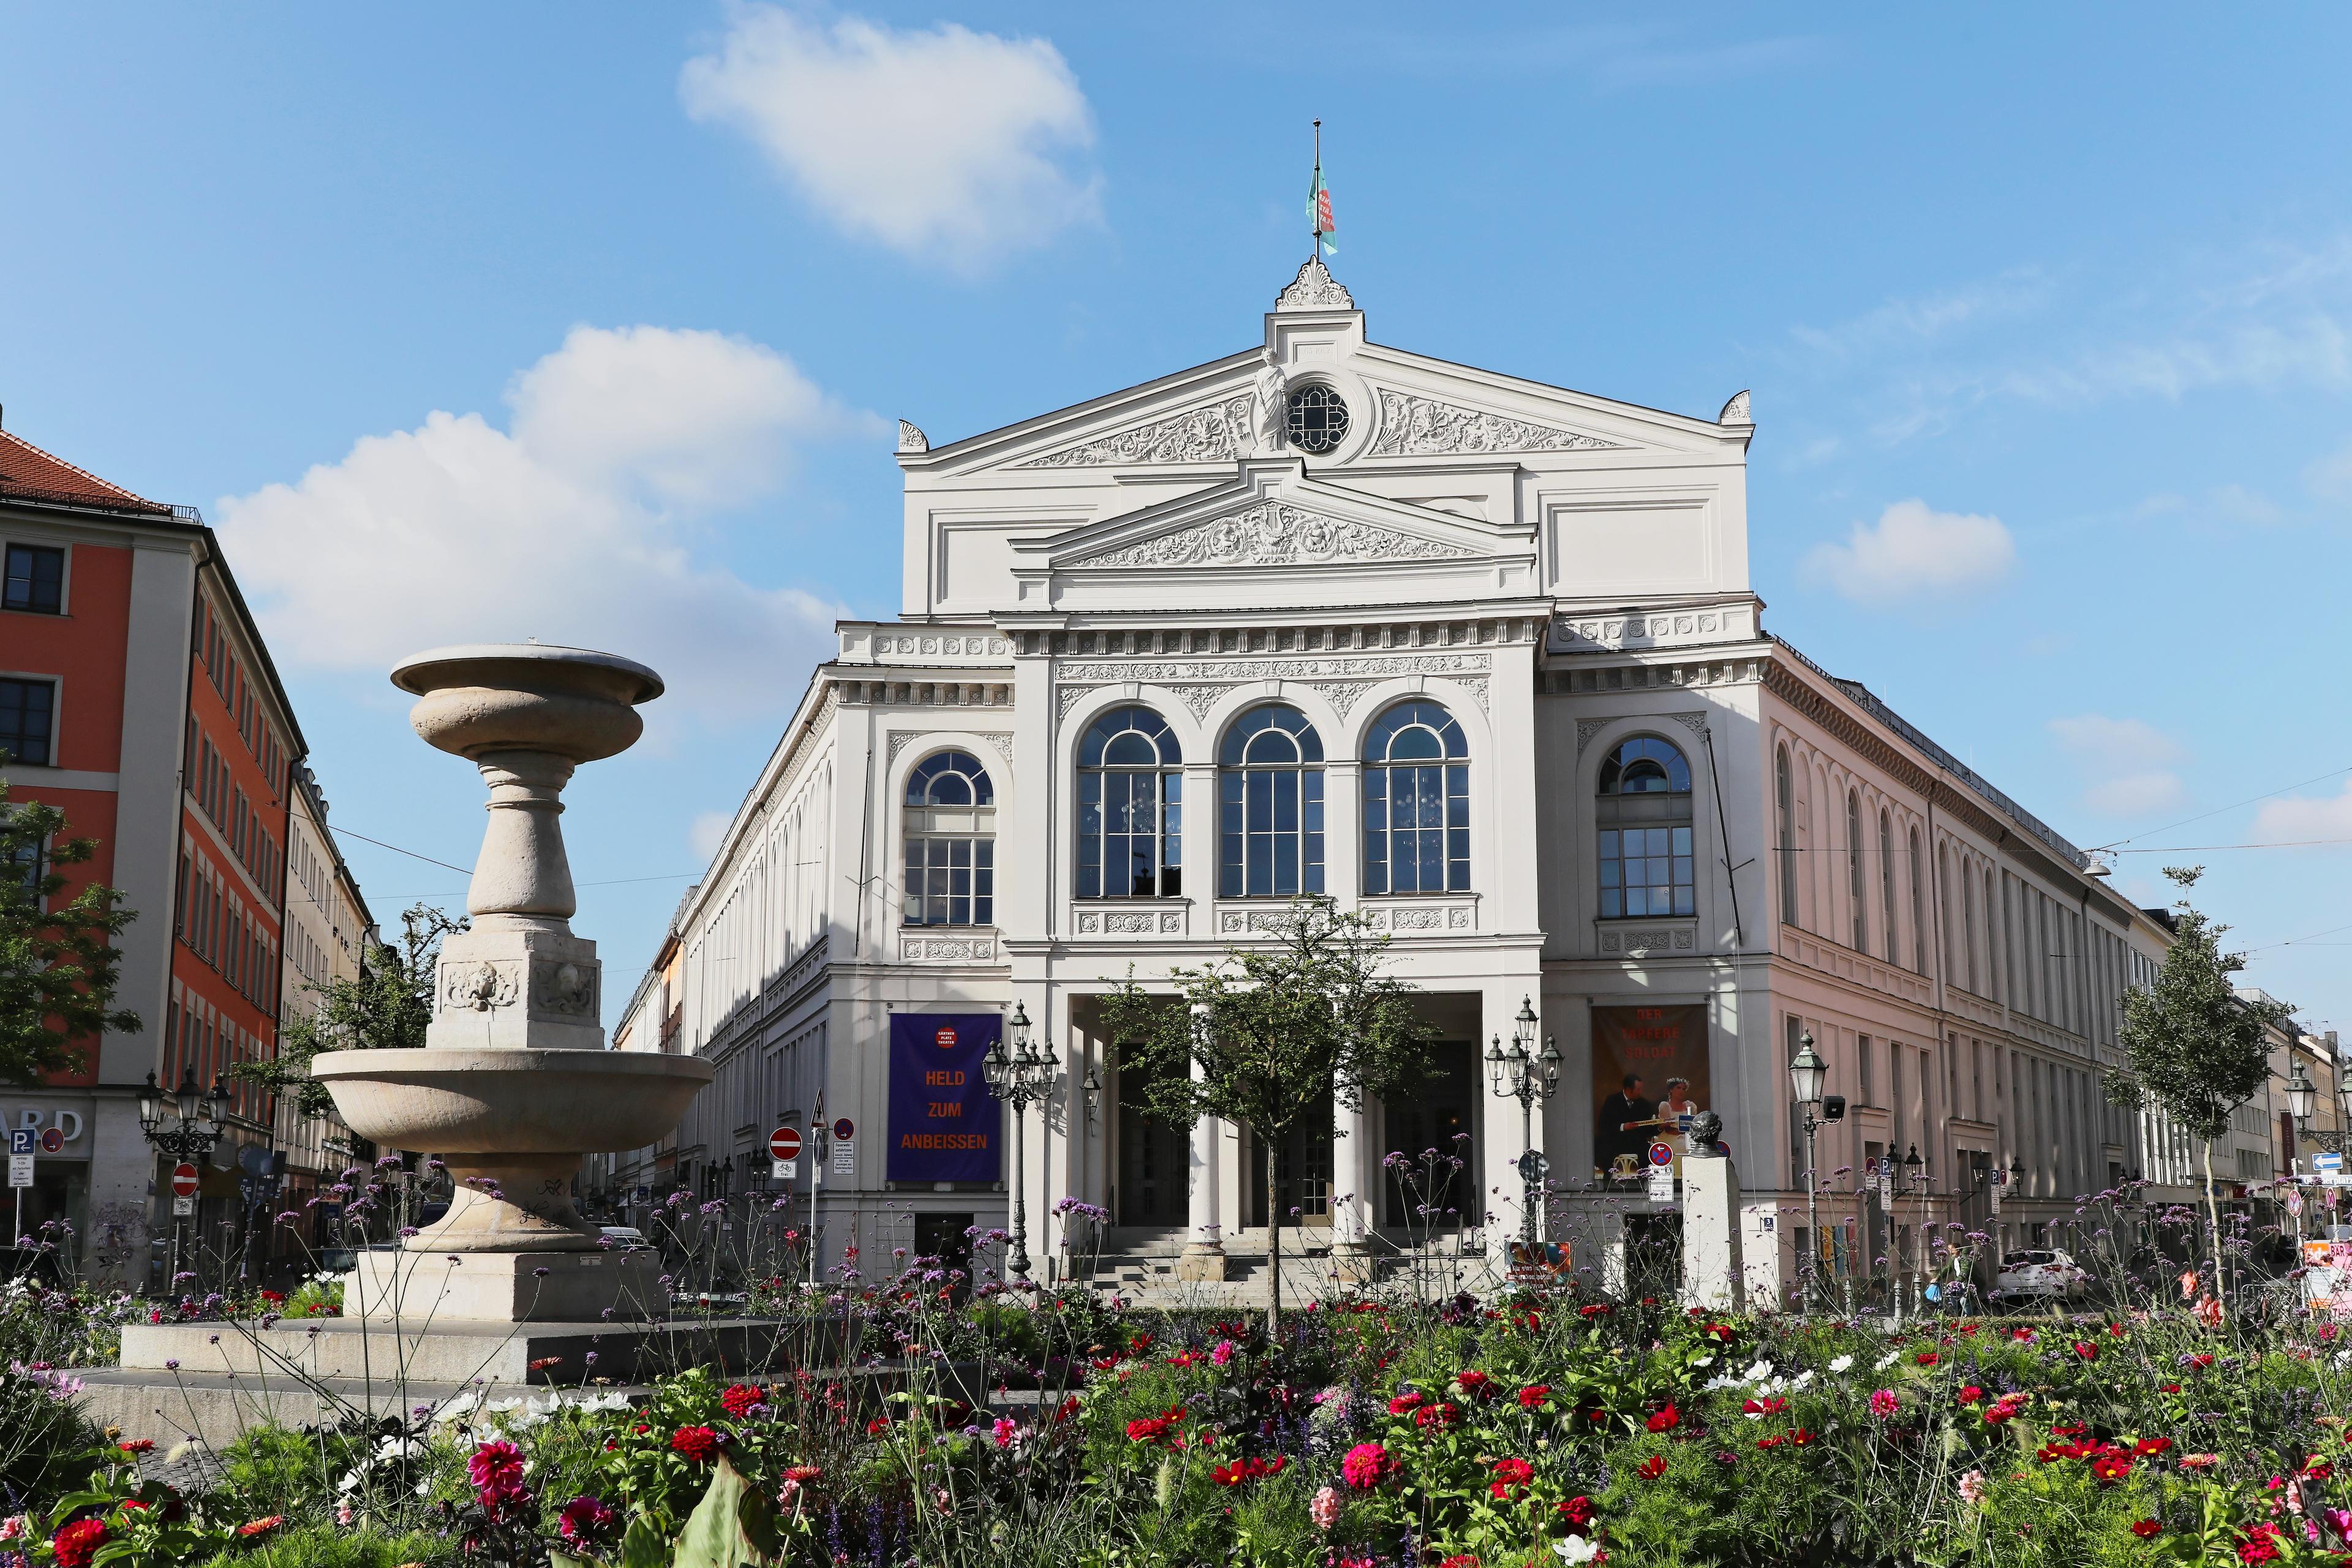 Totalen und Details vom Gebäude des Staatstheaters am Gärtnerplatz, mit Blumenrabatte und Brunnen im Vordergrund